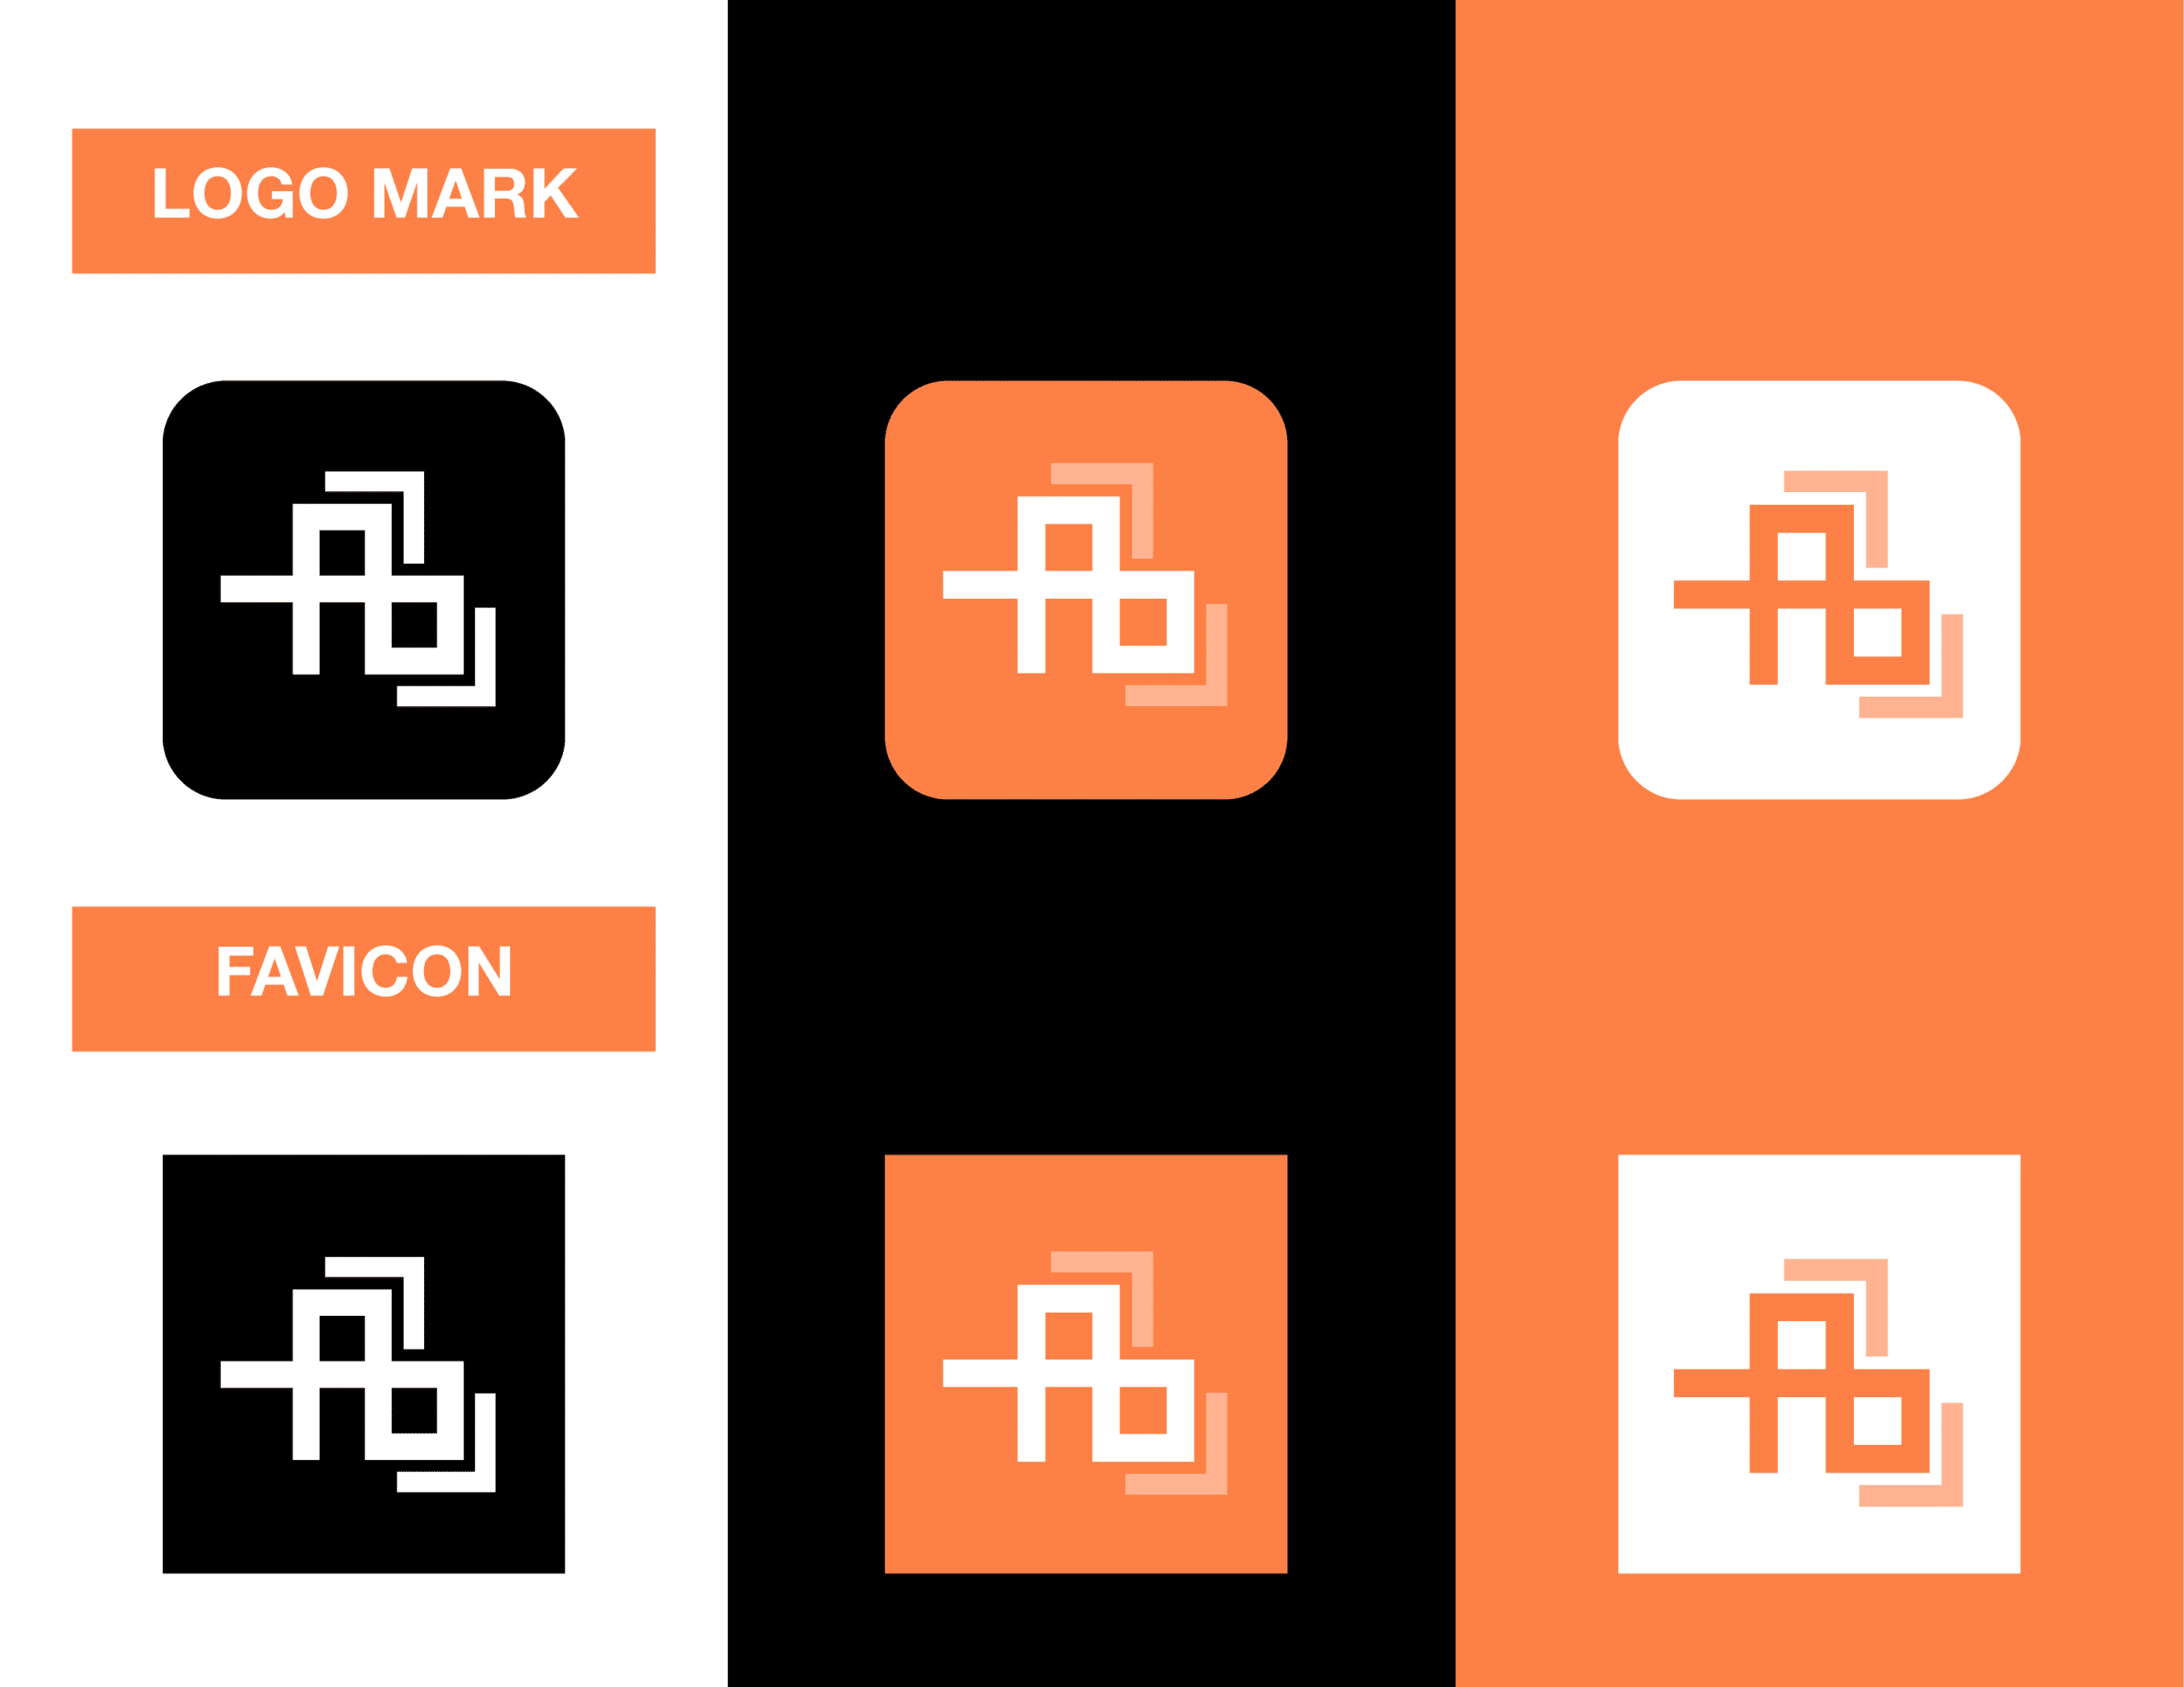 02ArchitectBookkeeping_Showcase_Logo Mark and Favicon